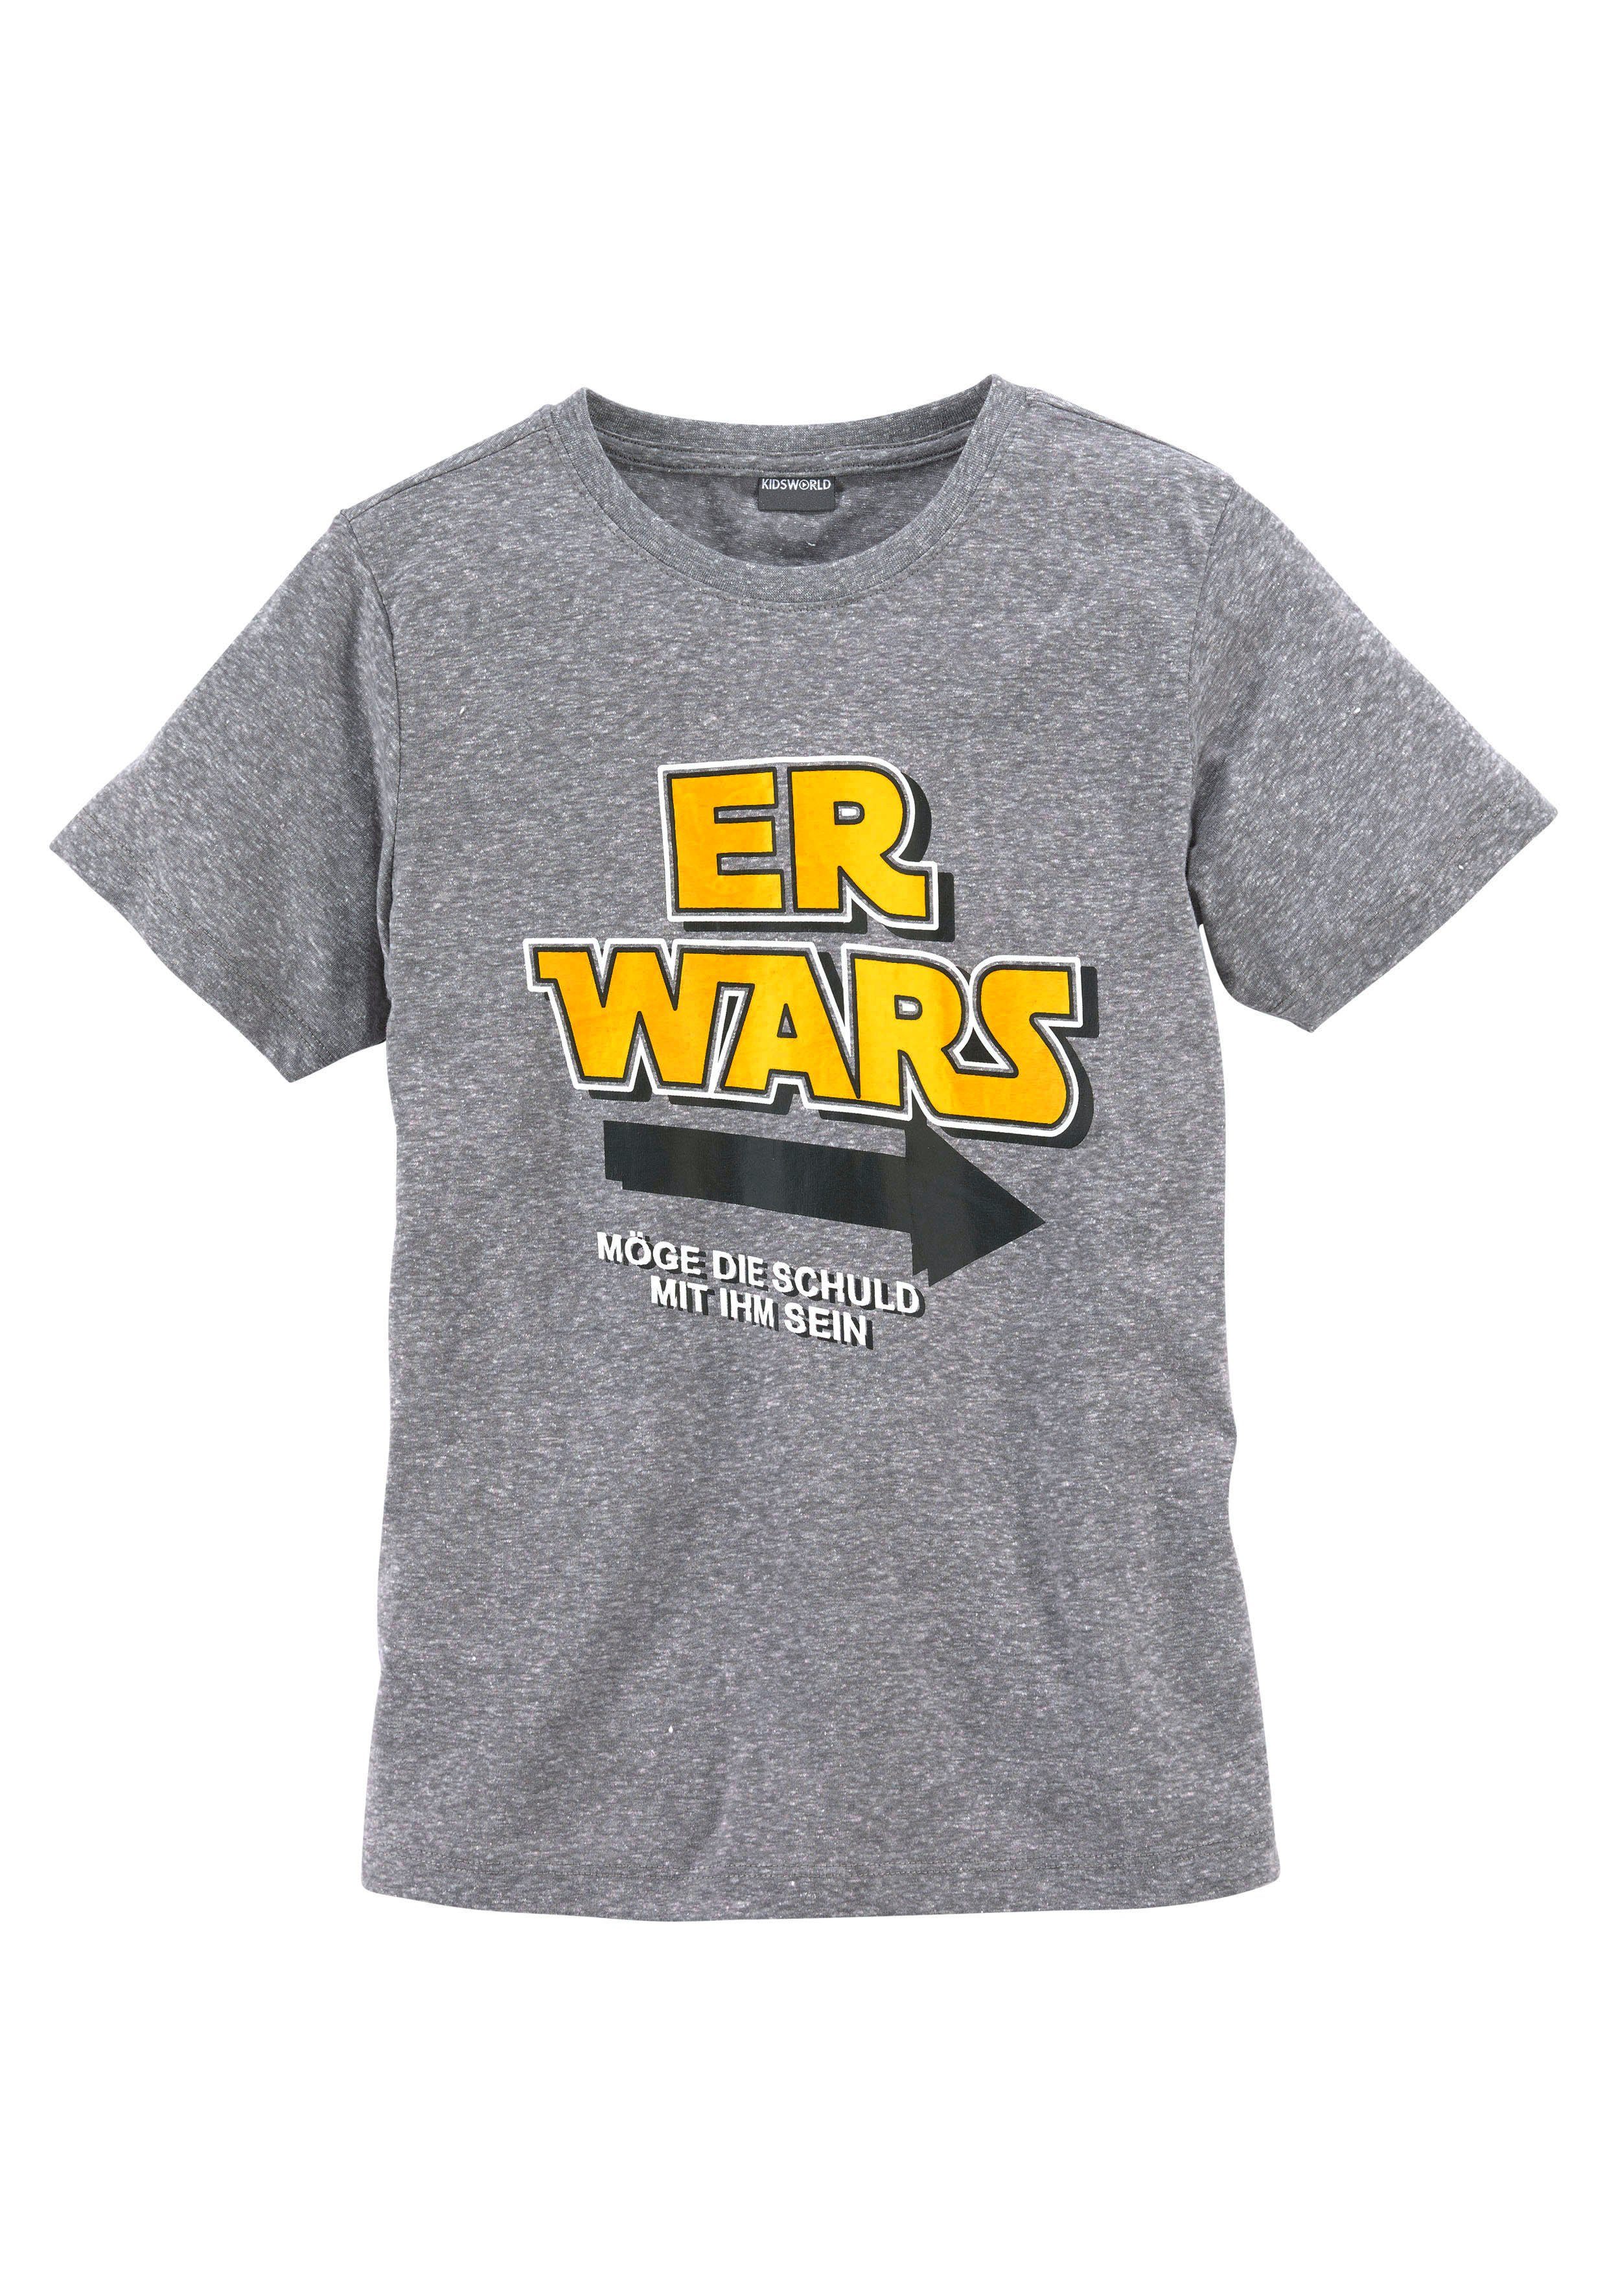 KIDSWORLD WARS, ER T-Shirt Spruch